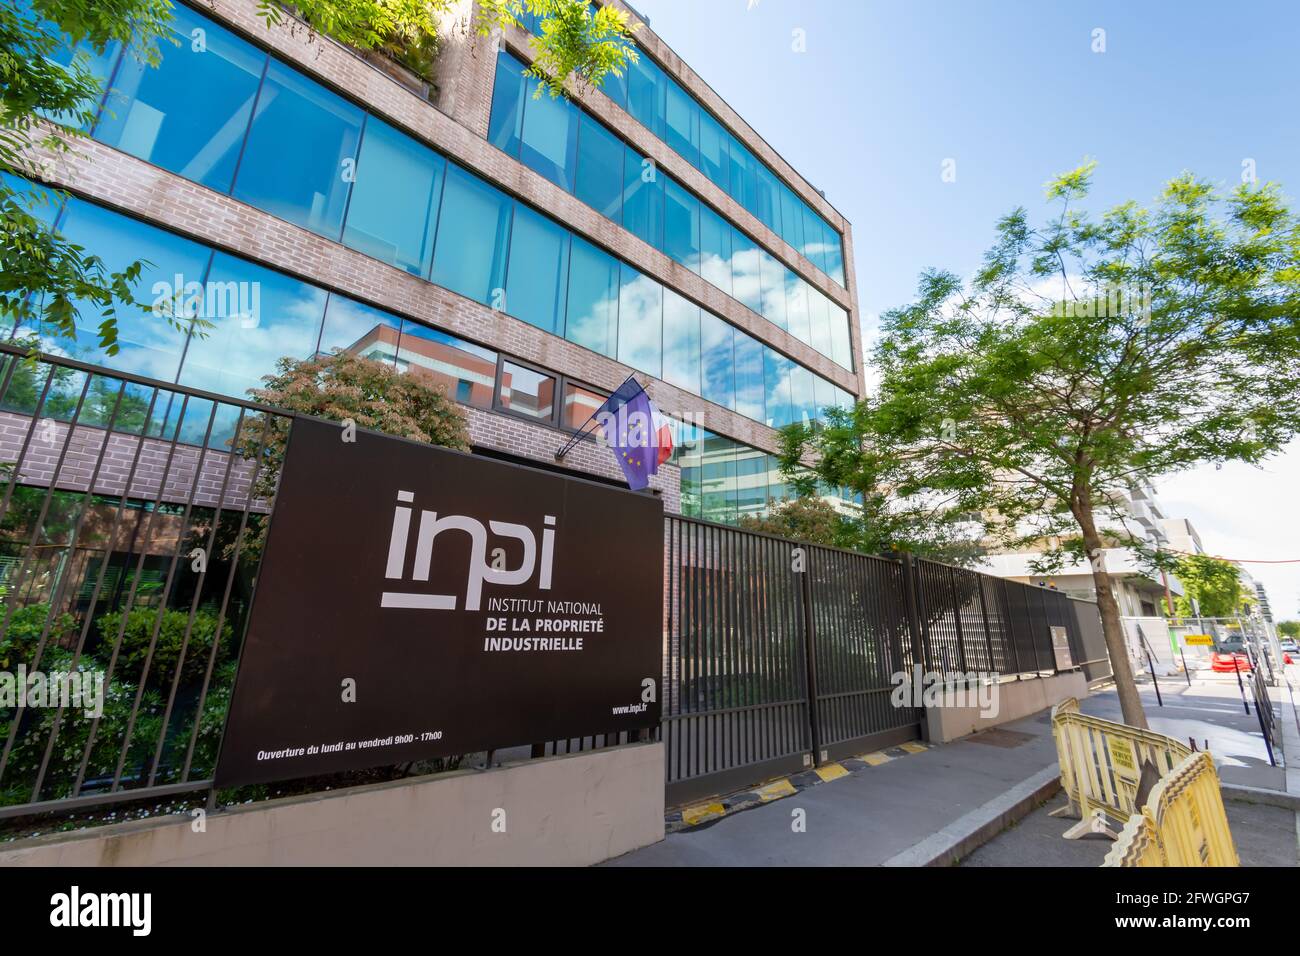 Vista exterior de la sede del INPI, Instituto Nacional de la Propiedad Industrial, institución pública francesa encargada de las marcas y patentes Foto de stock